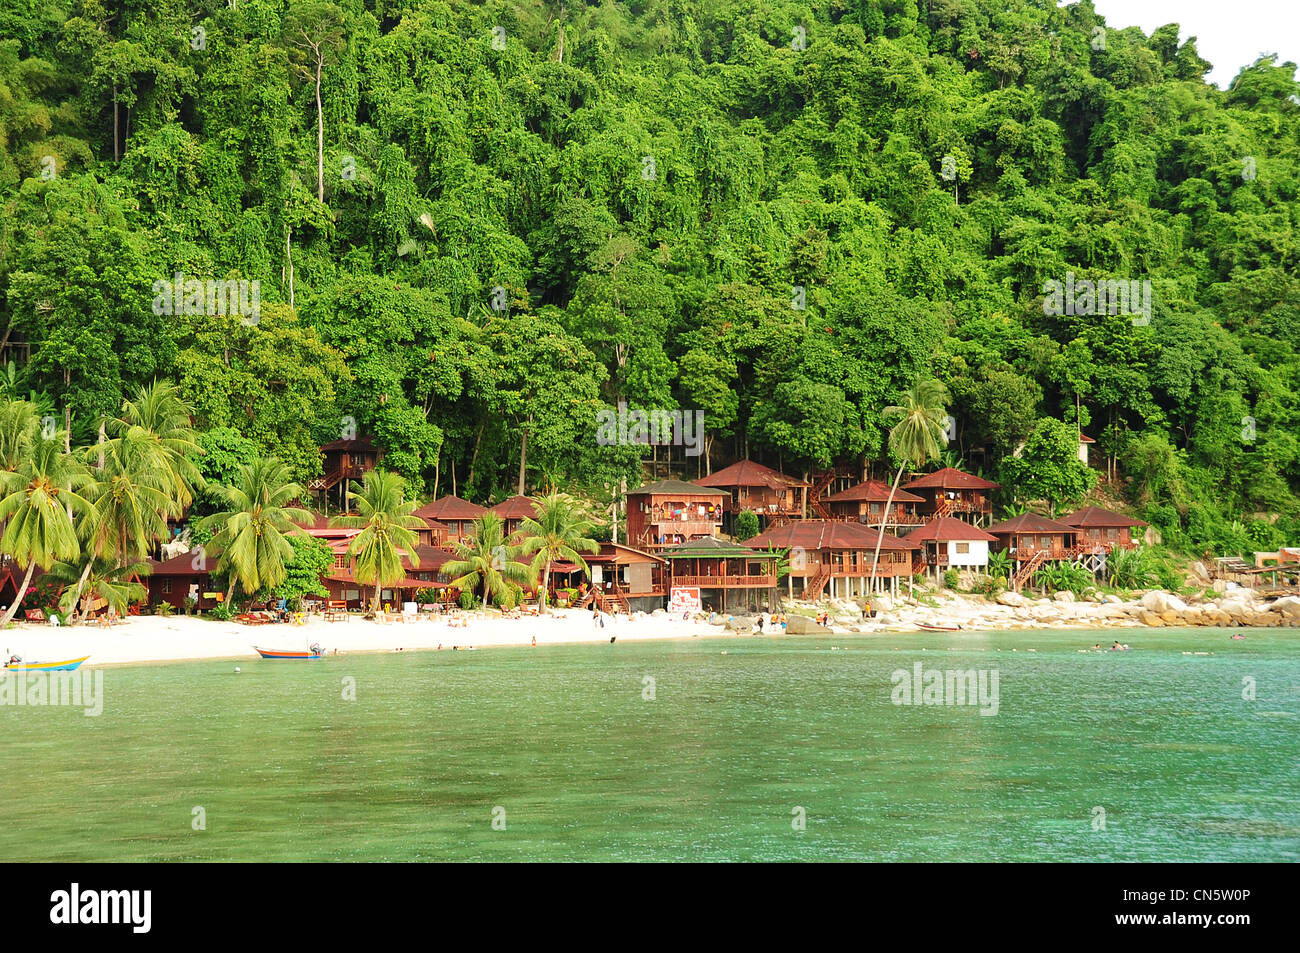 La Malaisie, l'Etat de Terengganu, Îles Perhentian Kecil, Perhentian, hôtel en bois dans la forêt Banque D'Images